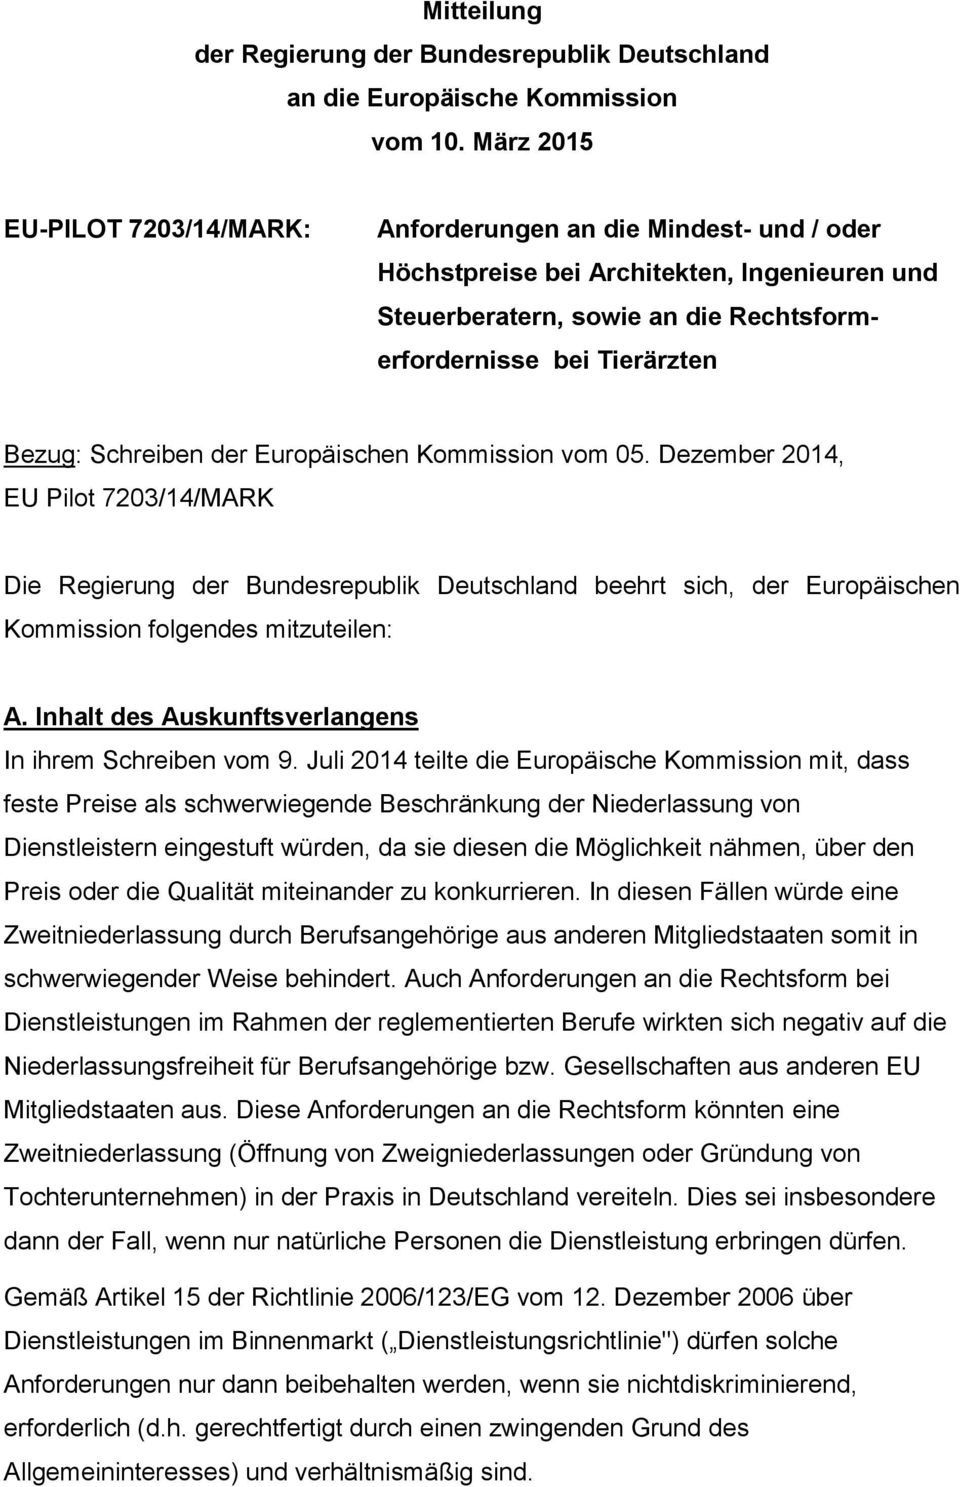 Schreiben der Europäischen Kommission vom 05. Dezember 2014, EU Pilot 7203/14/MARK Die Regierung der Bundesrepublik Deutschland beehrt sich, der Europäischen Kommission folgendes mitzuteilen: A.